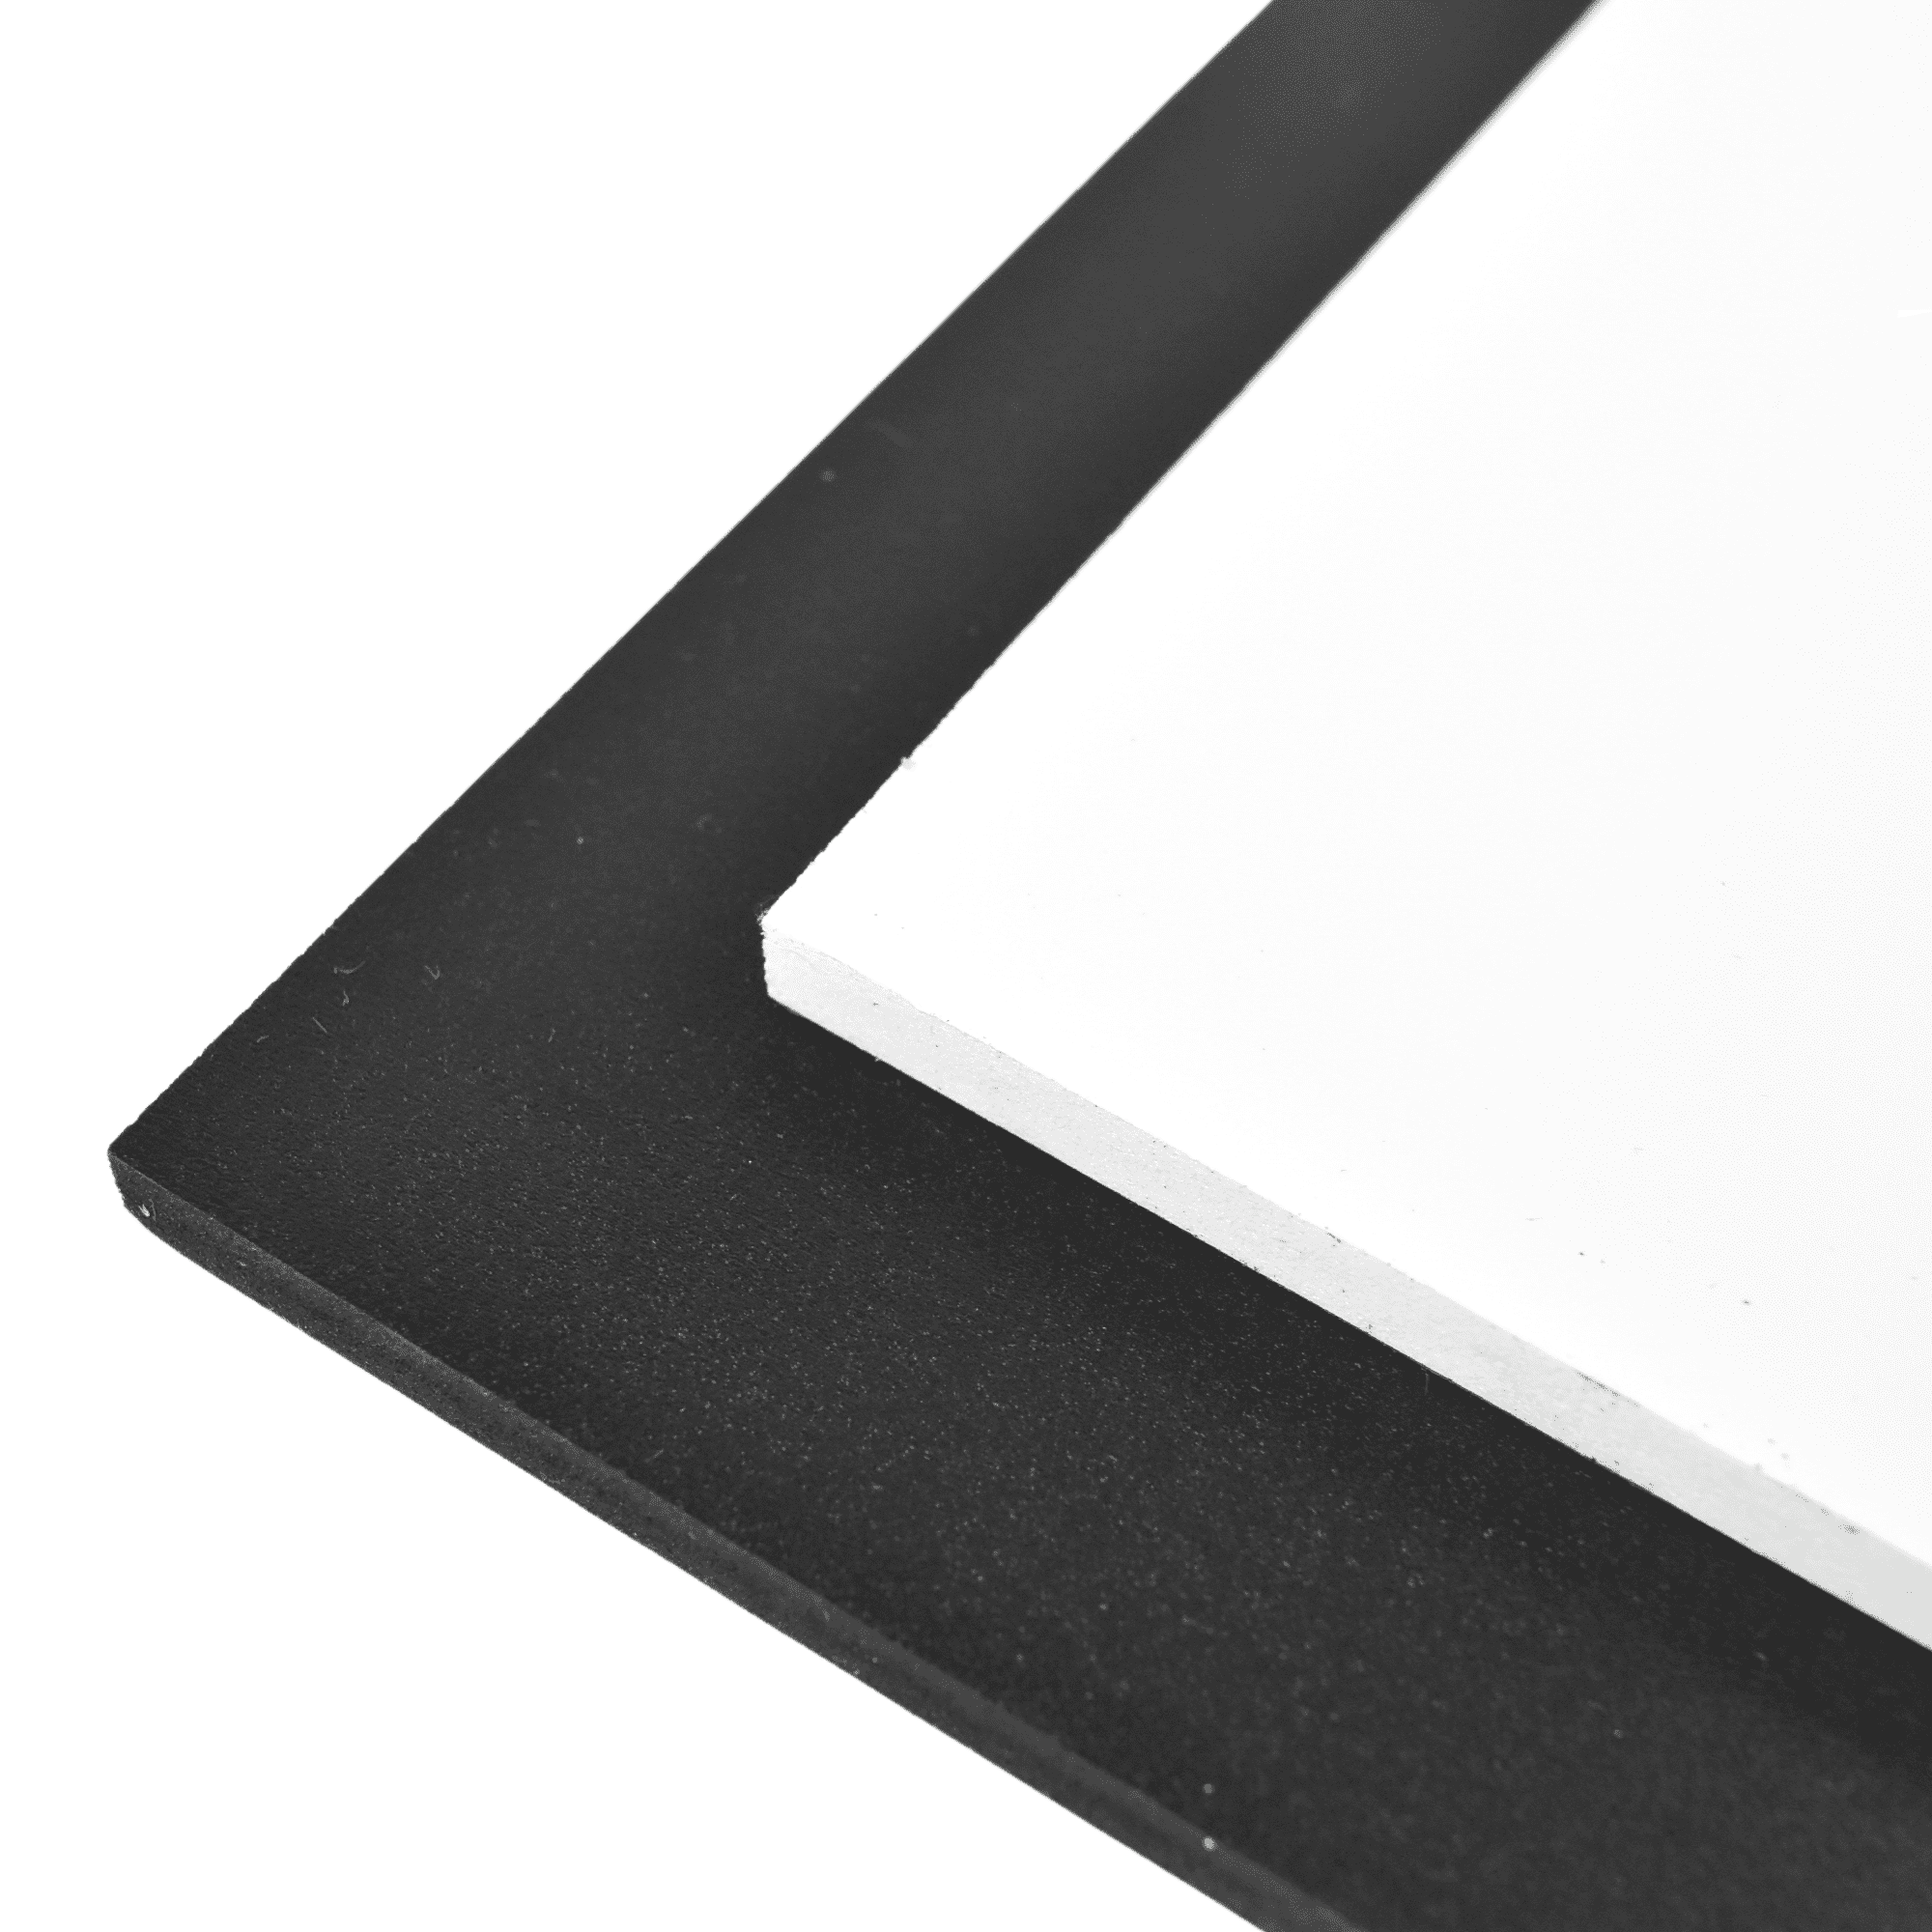 BLACK SINTRA PVC FOAM BOARD PLASTIC SHEETS 3MM 12" X 24" X 1/8" 